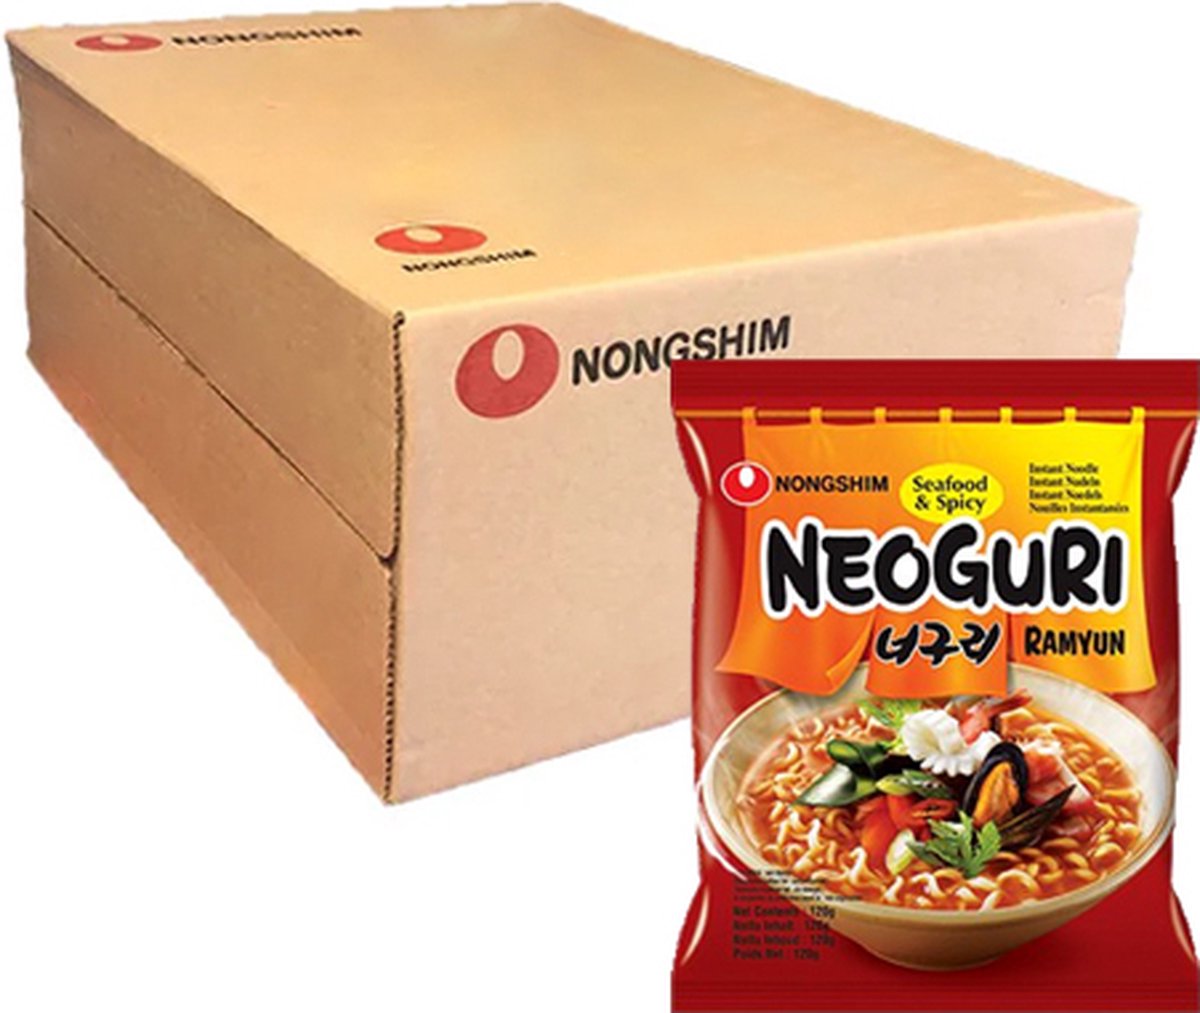 Nouilles instantanées coréennes Soon Légumes - Nongshim